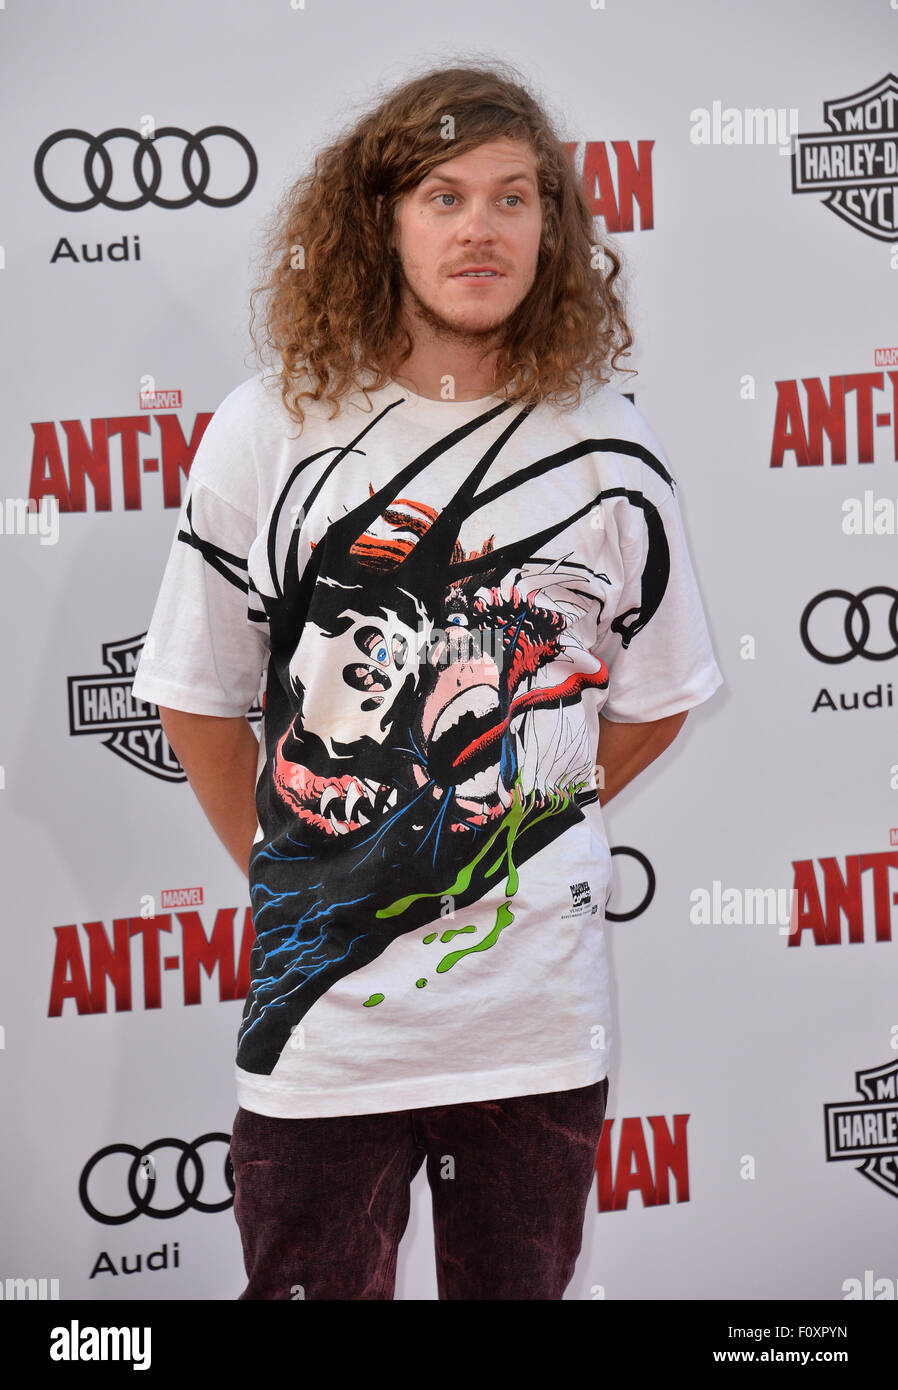 LOS ANGELES, CA - Giugno 29, 2015: Blake Anderson alla prima mondiale di "Ant-Man" presso il Teatro di Dolby, Hollywood. Foto Stock